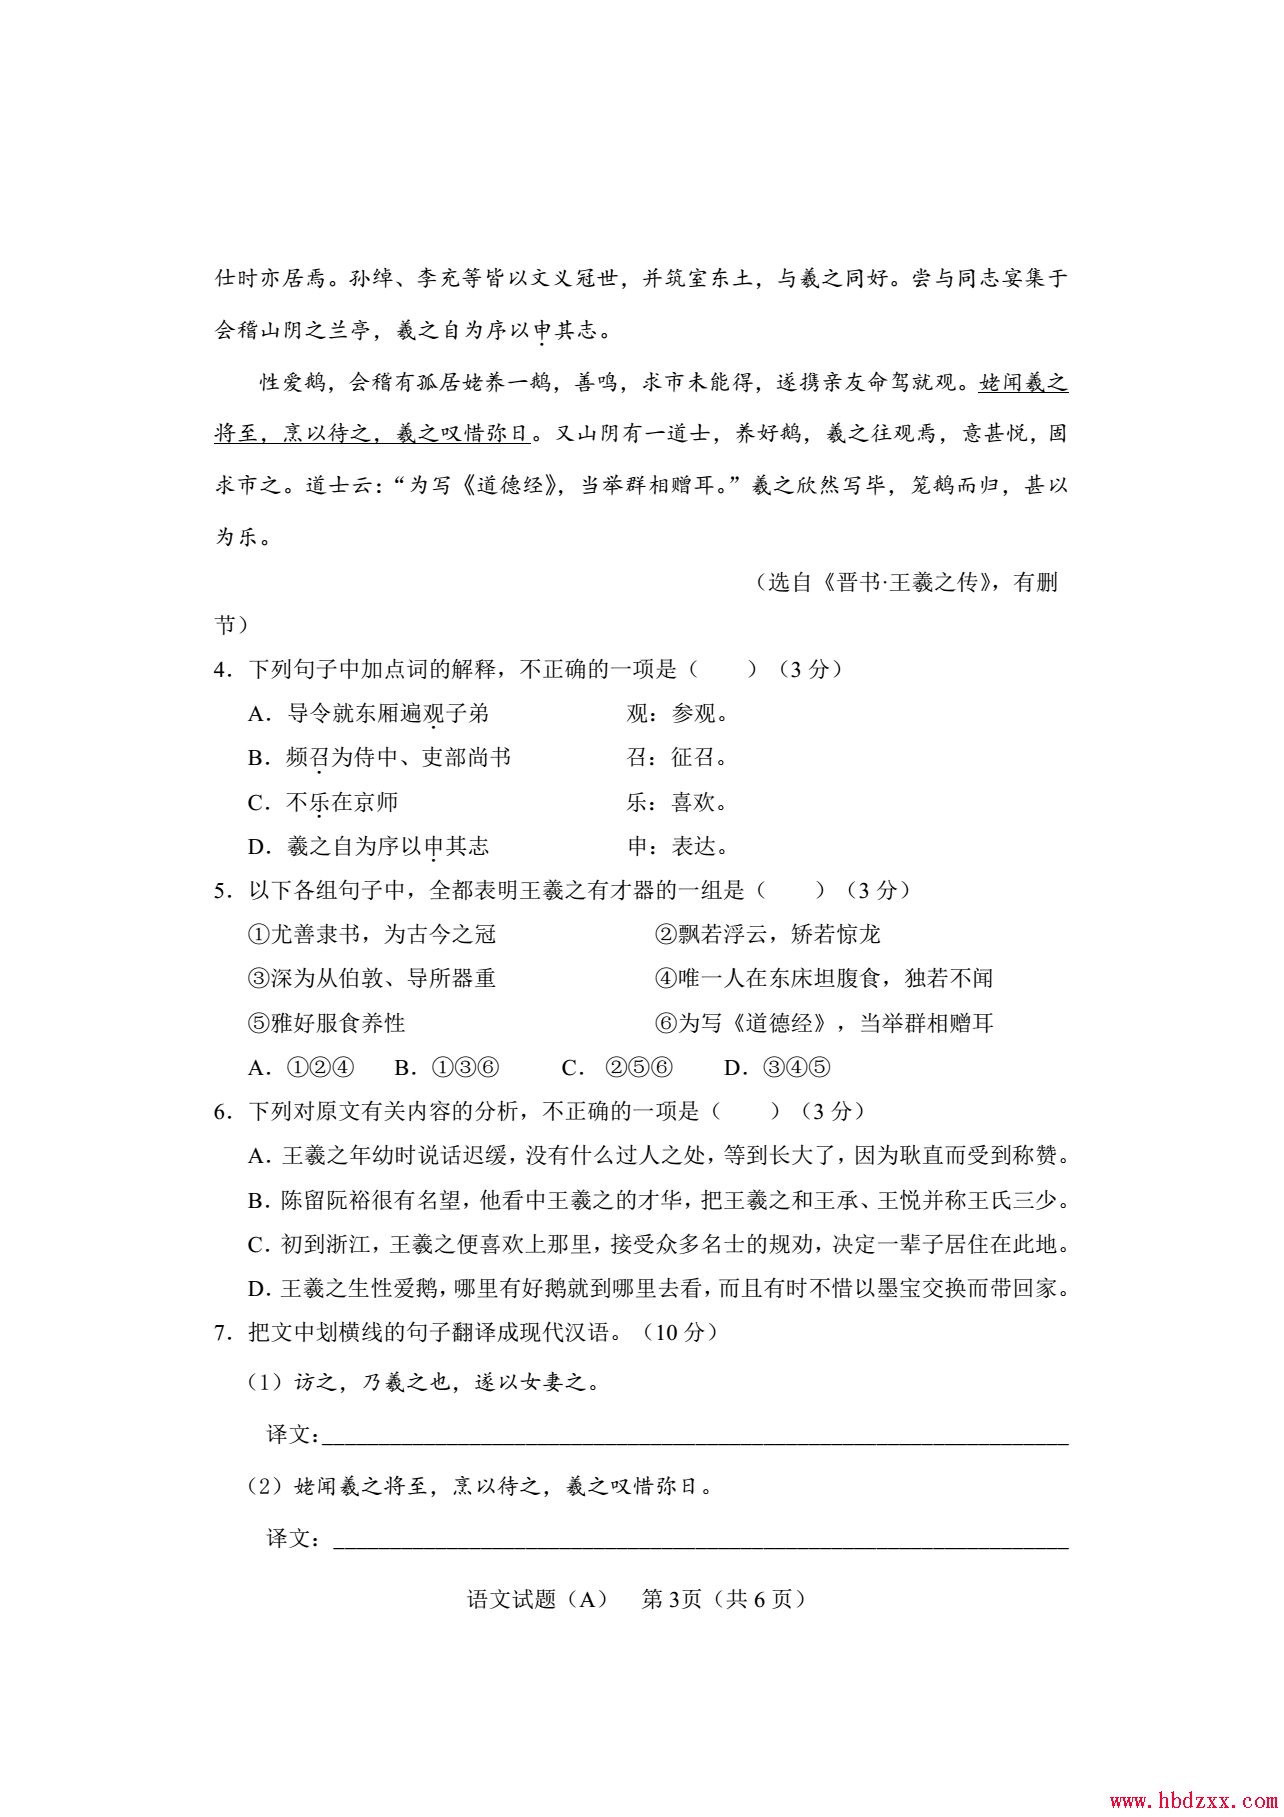 石家庄铁路职业技术学院2013年语文单招试题 图3